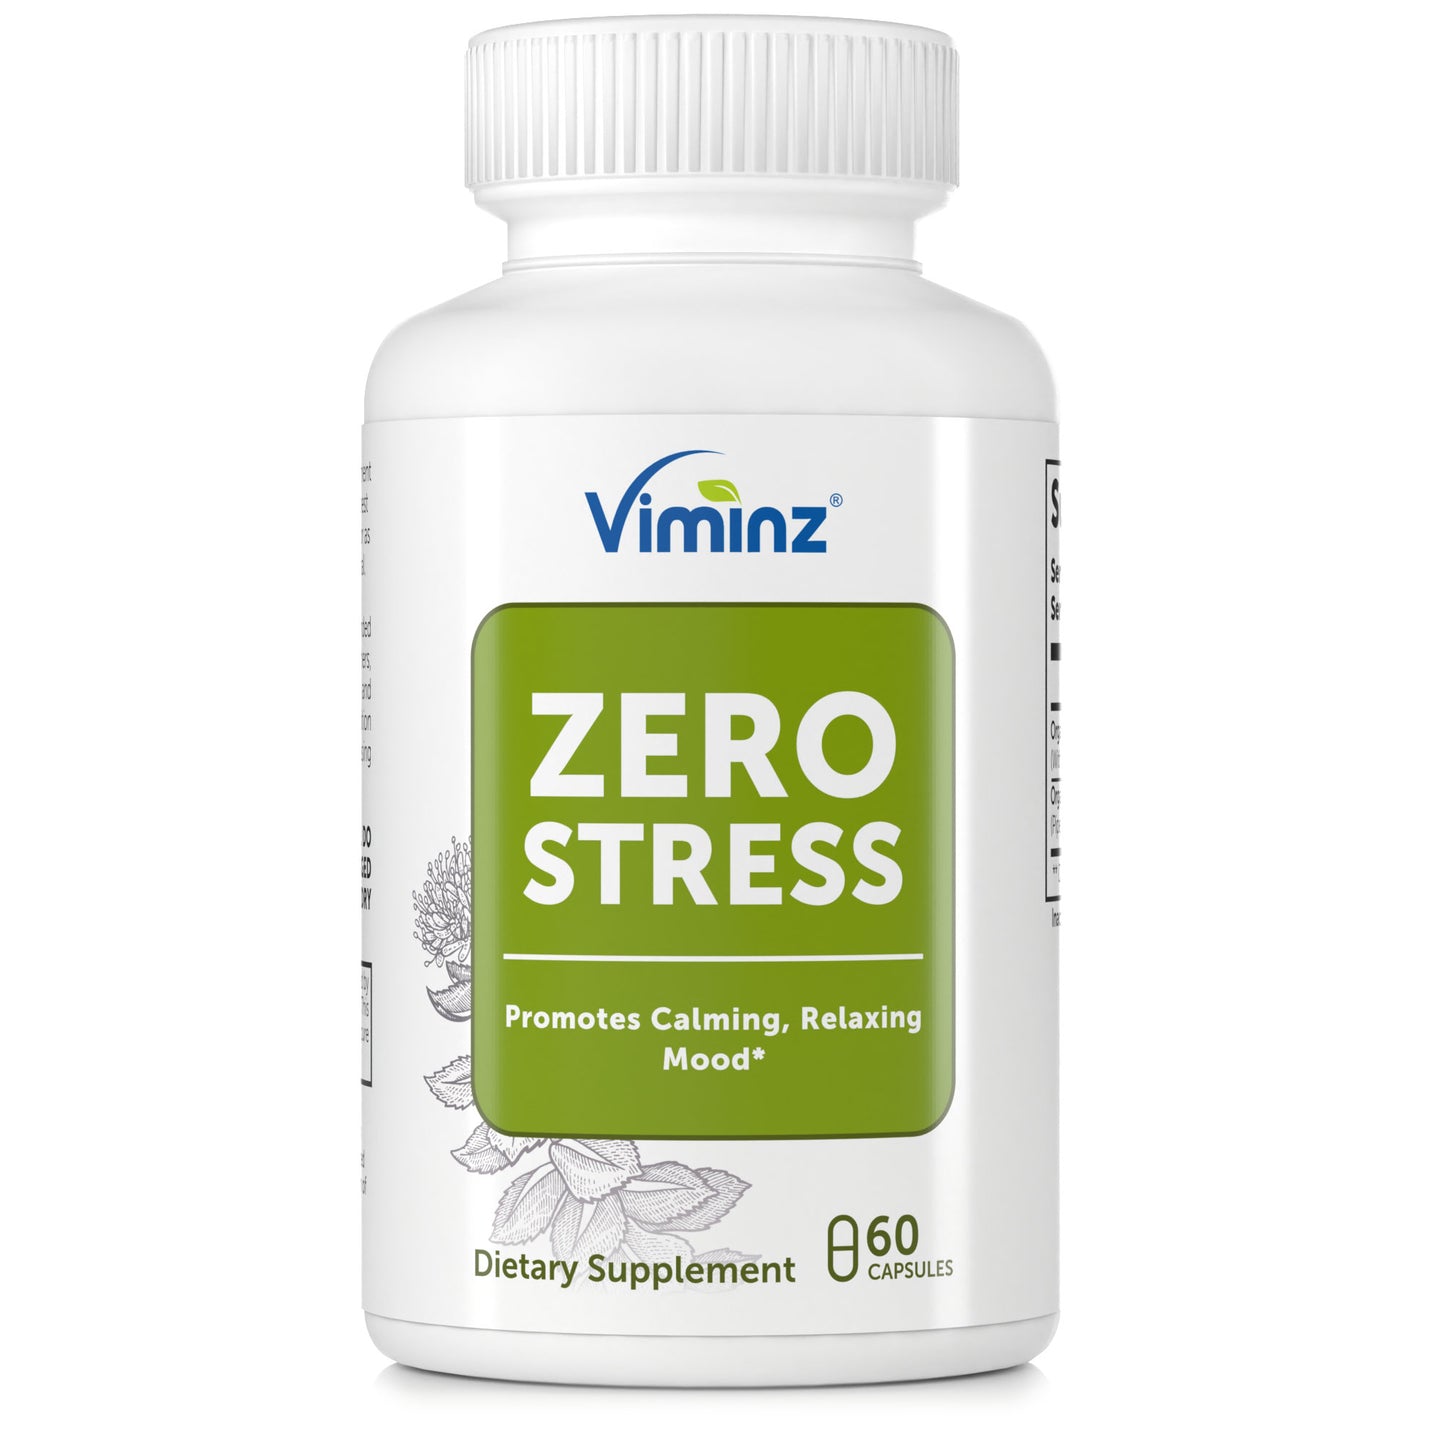 ZERO STRESS - Favorisce l'umore calmante e rilassante* - 60 Capsule